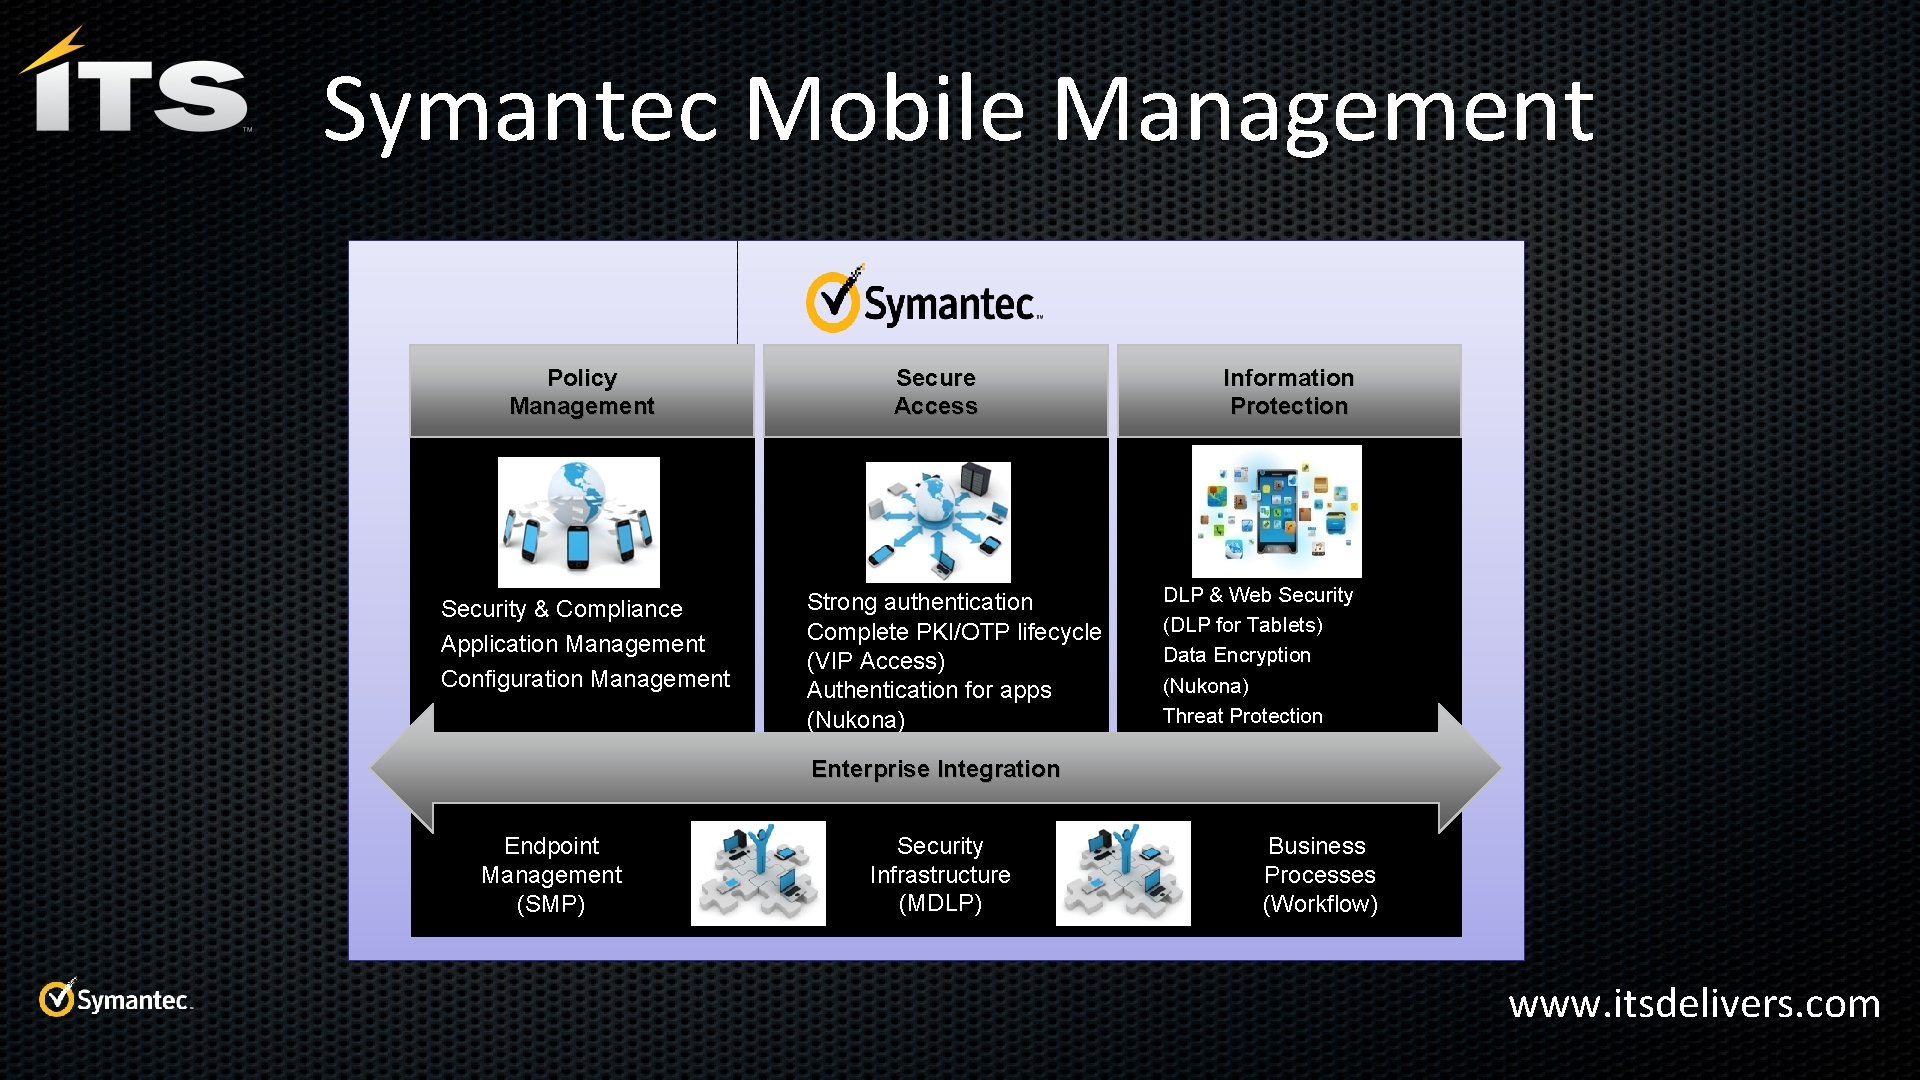 Symantec Mobile Management Policy Management • Security & Compliance • Application Management • Configuration